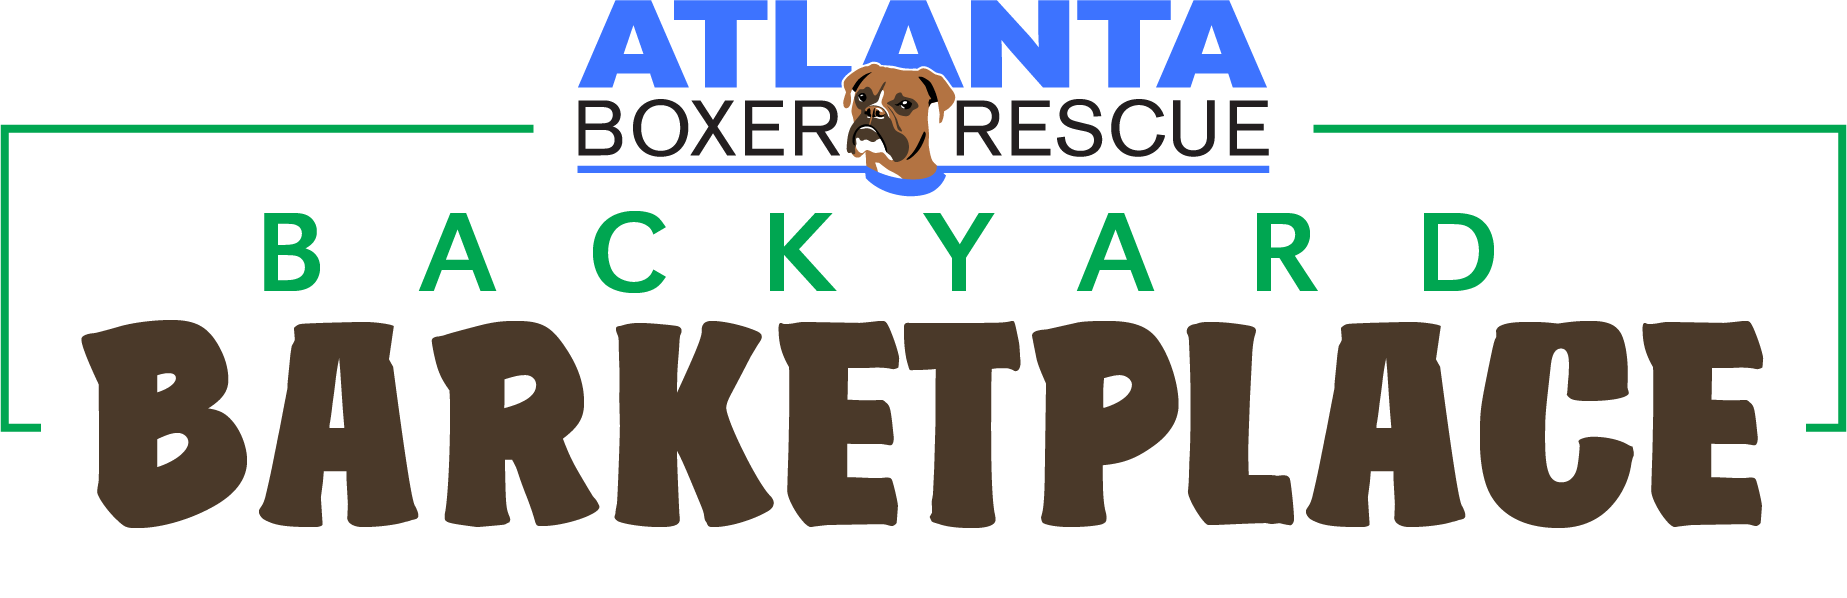 Atlanta Boxer Rescue Navy Blue Shirt